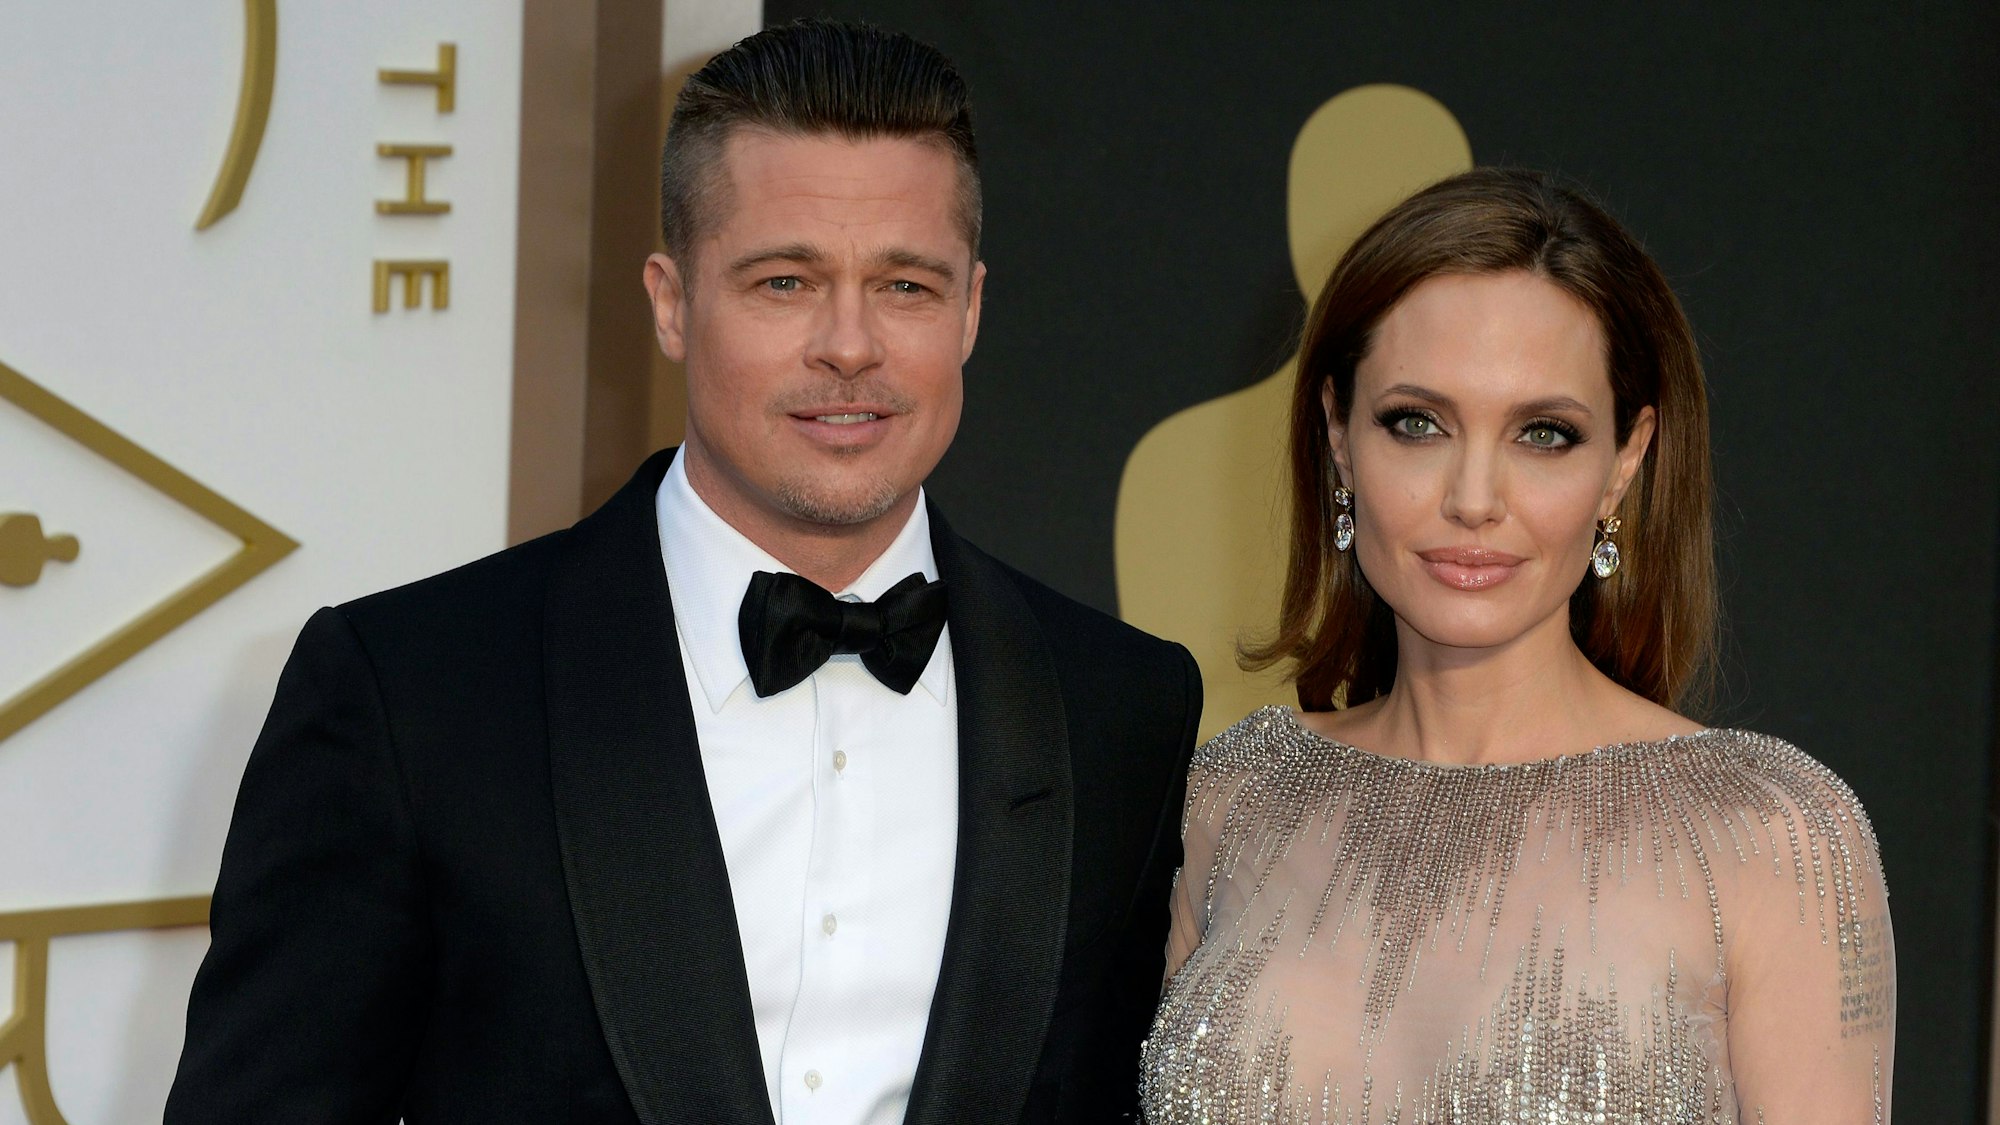 Die US-Schauspieler Angelina Jolie und Schauspieler Brad Pitt, aufgenommen am 02.03.2014 in Hollywood, Kalifornien (USA).